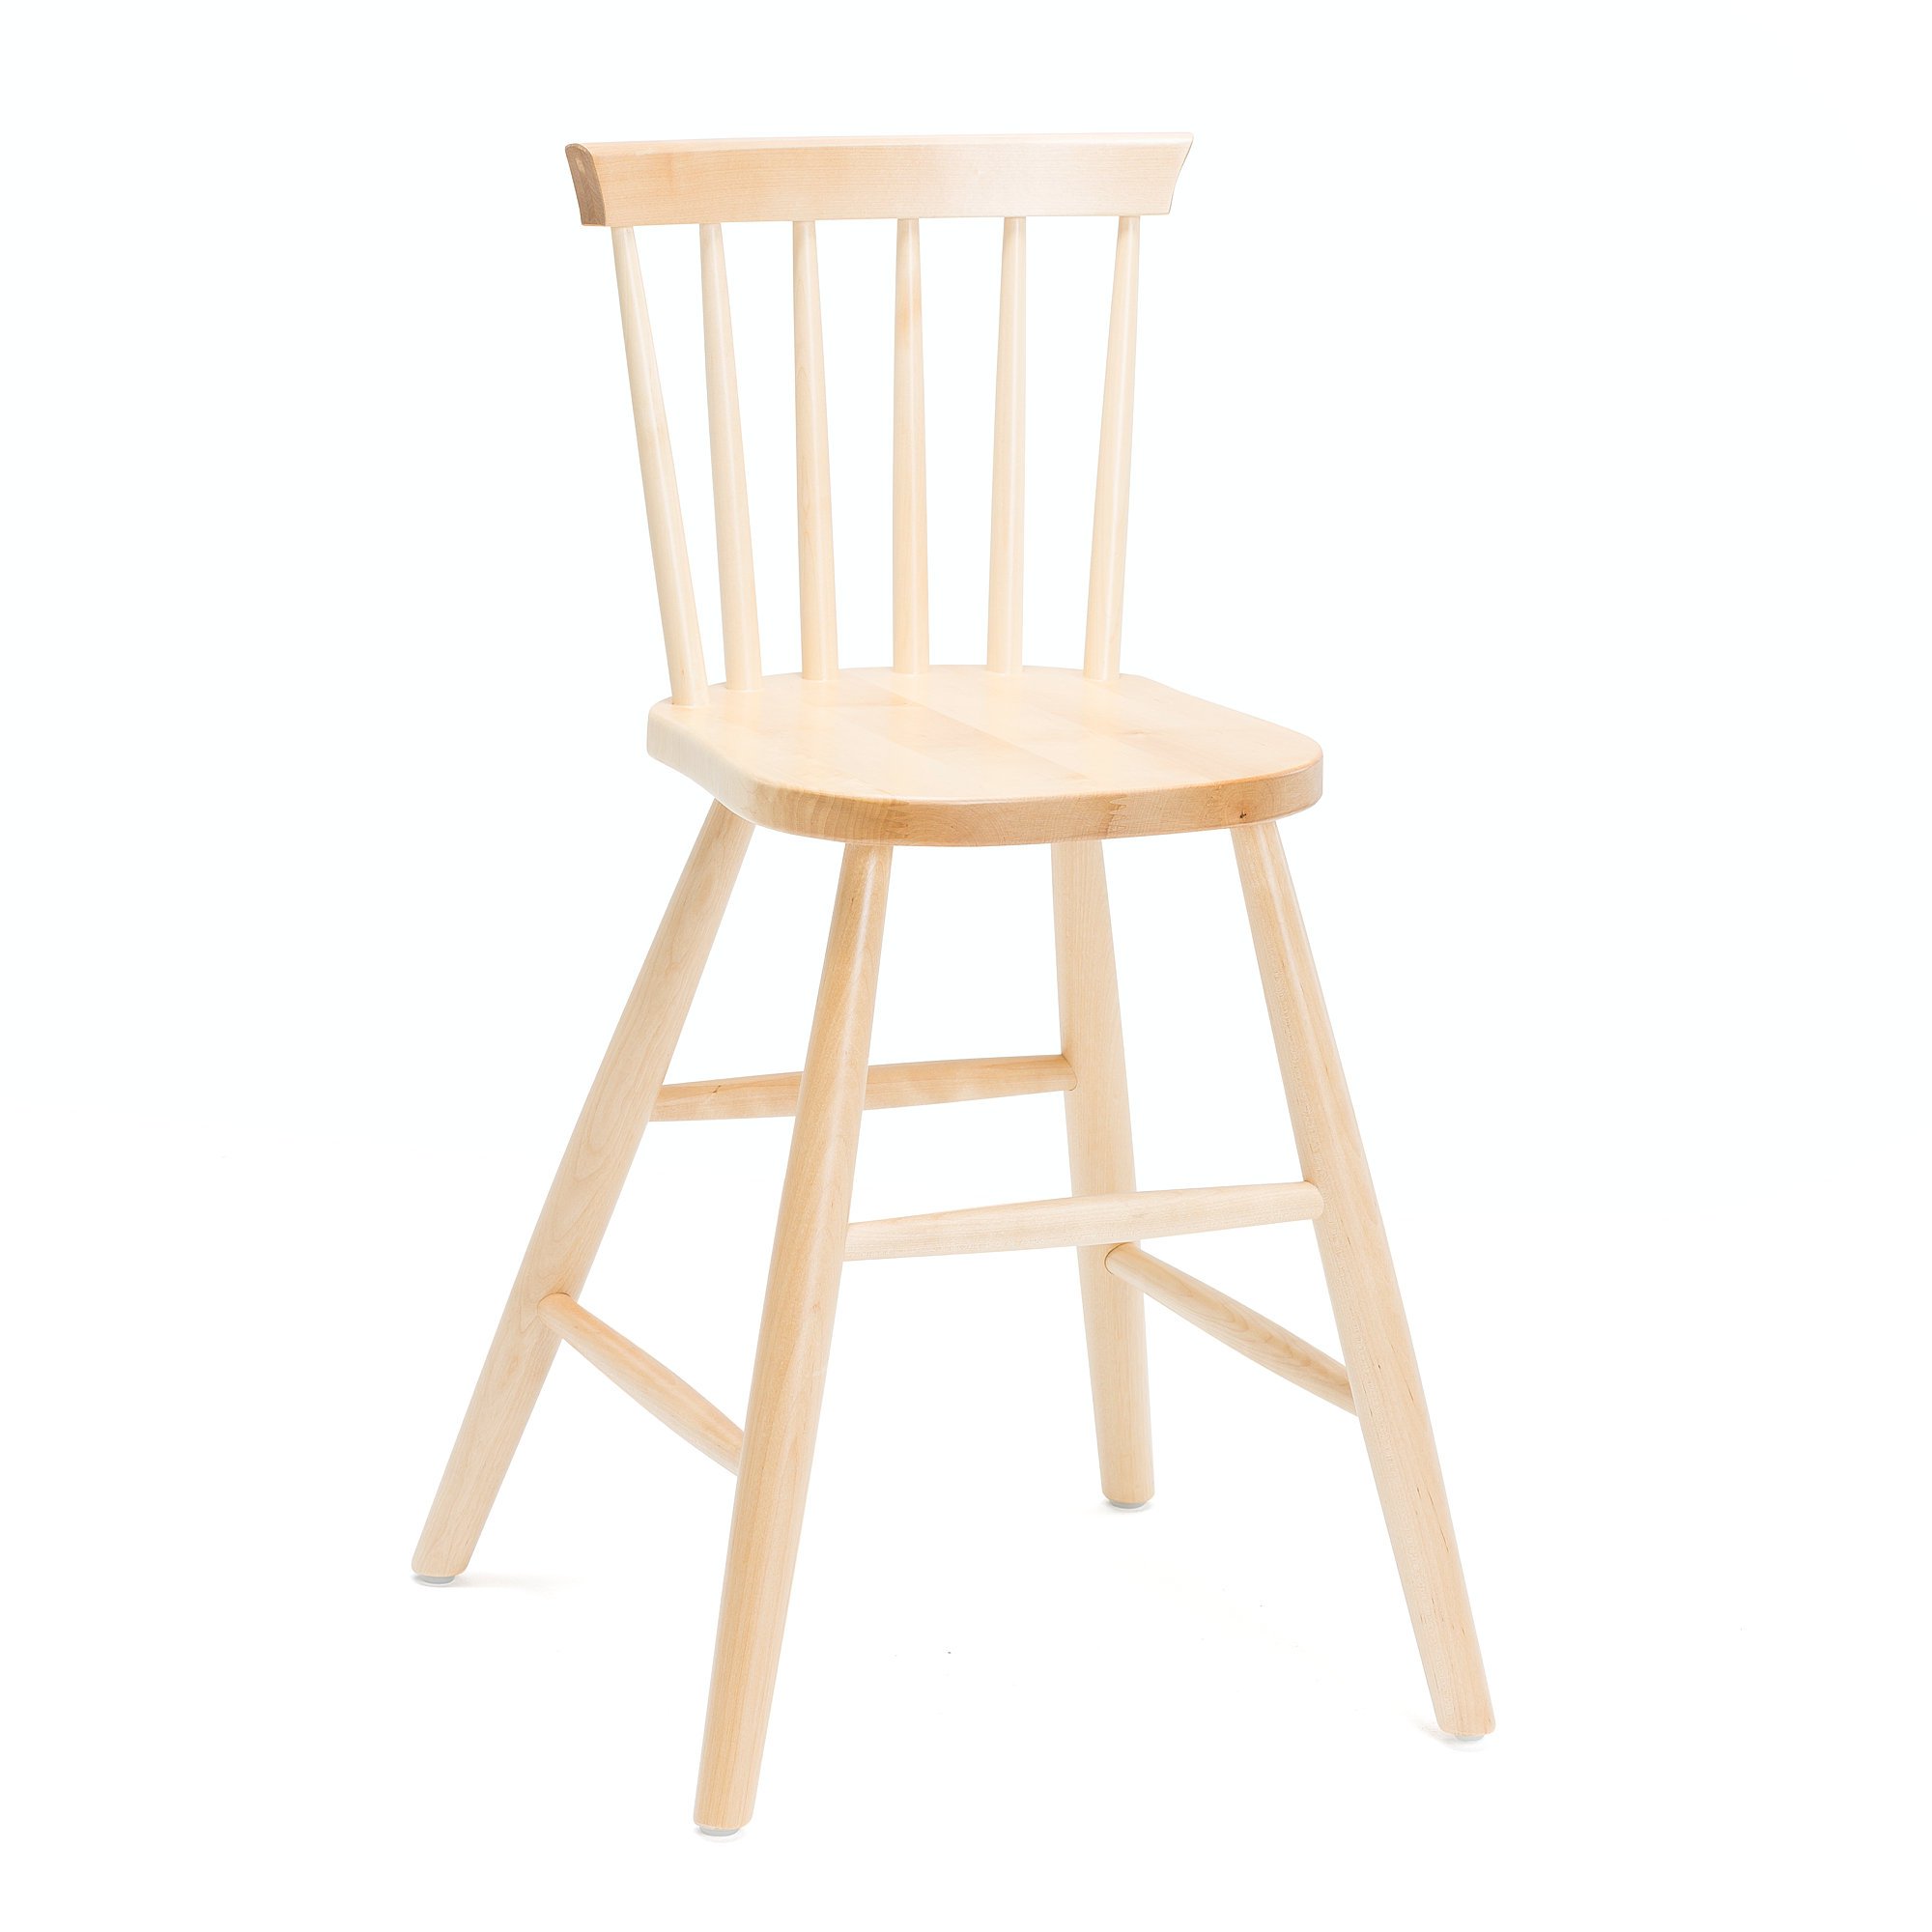 Children's high wooden chair ALICE, H 520 mm, birch